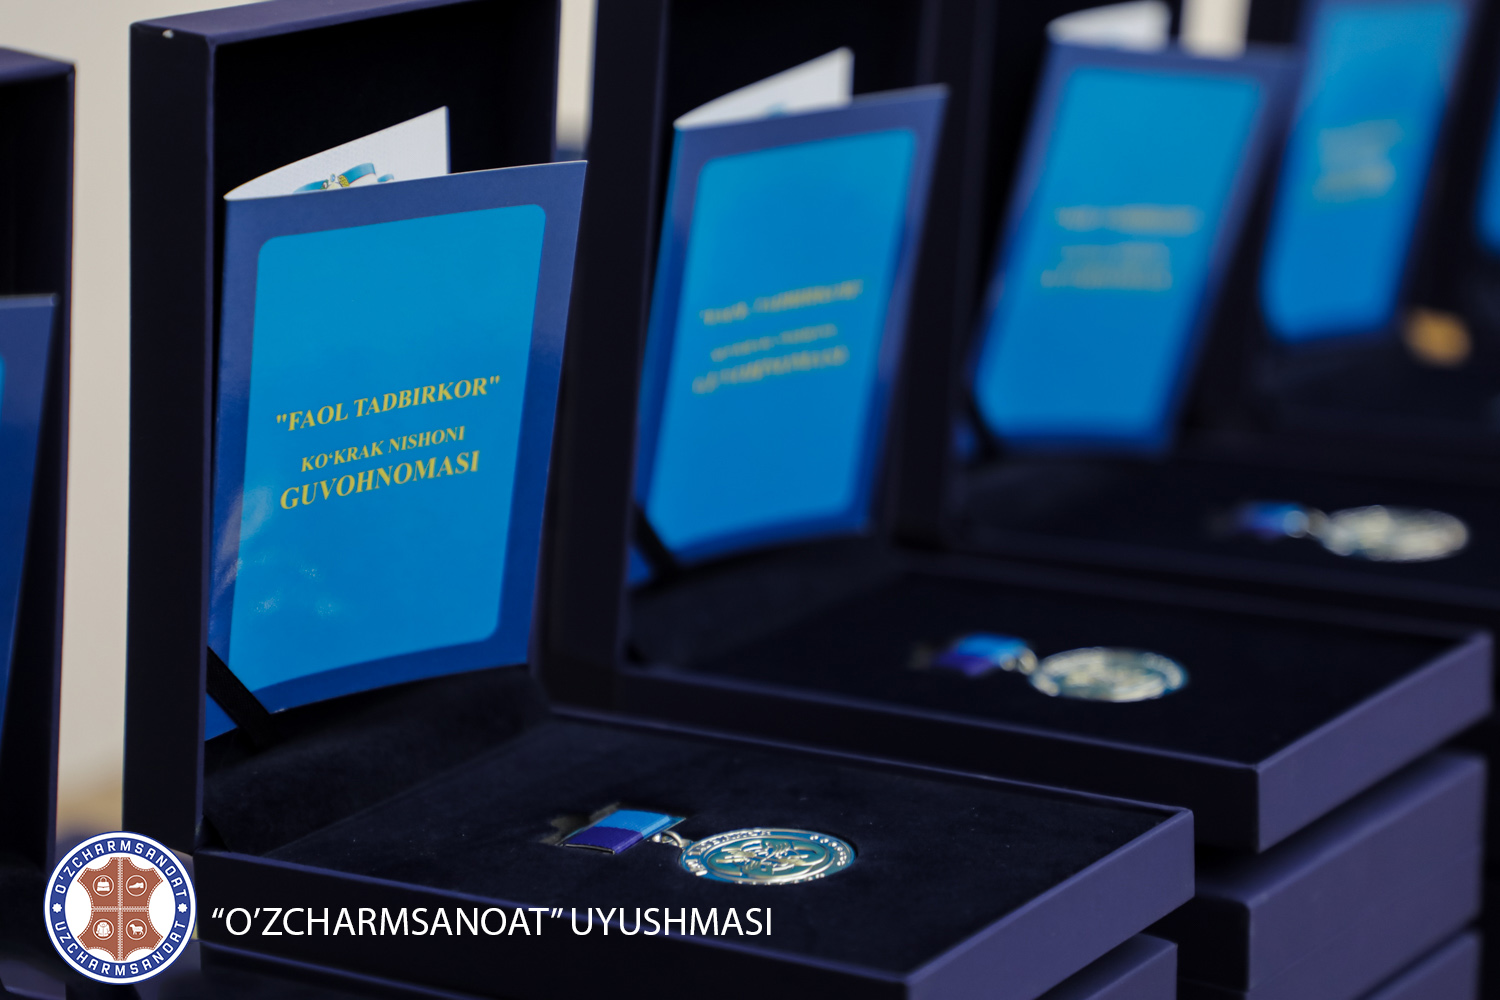 Предприниматели-члены ассоциации «Узчармсаноат» награждены нагрудным знаком «Фаол тадбиркор»